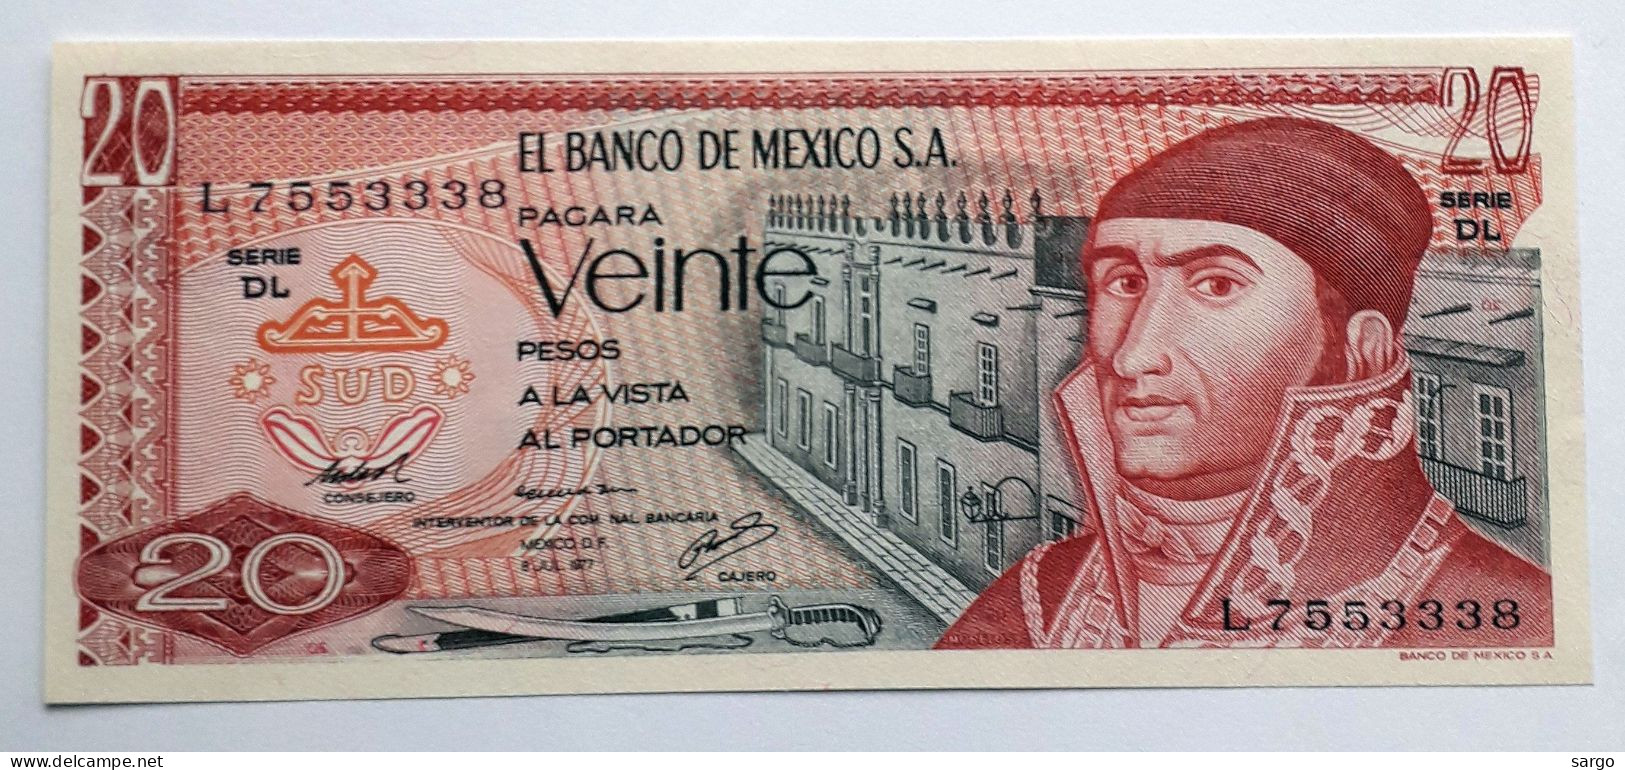 MEXICO - 20 PESOS  - P 64 (1977)  - UNC - BANKNOTES - PAPER MONEY - CARTAMONETA - - México